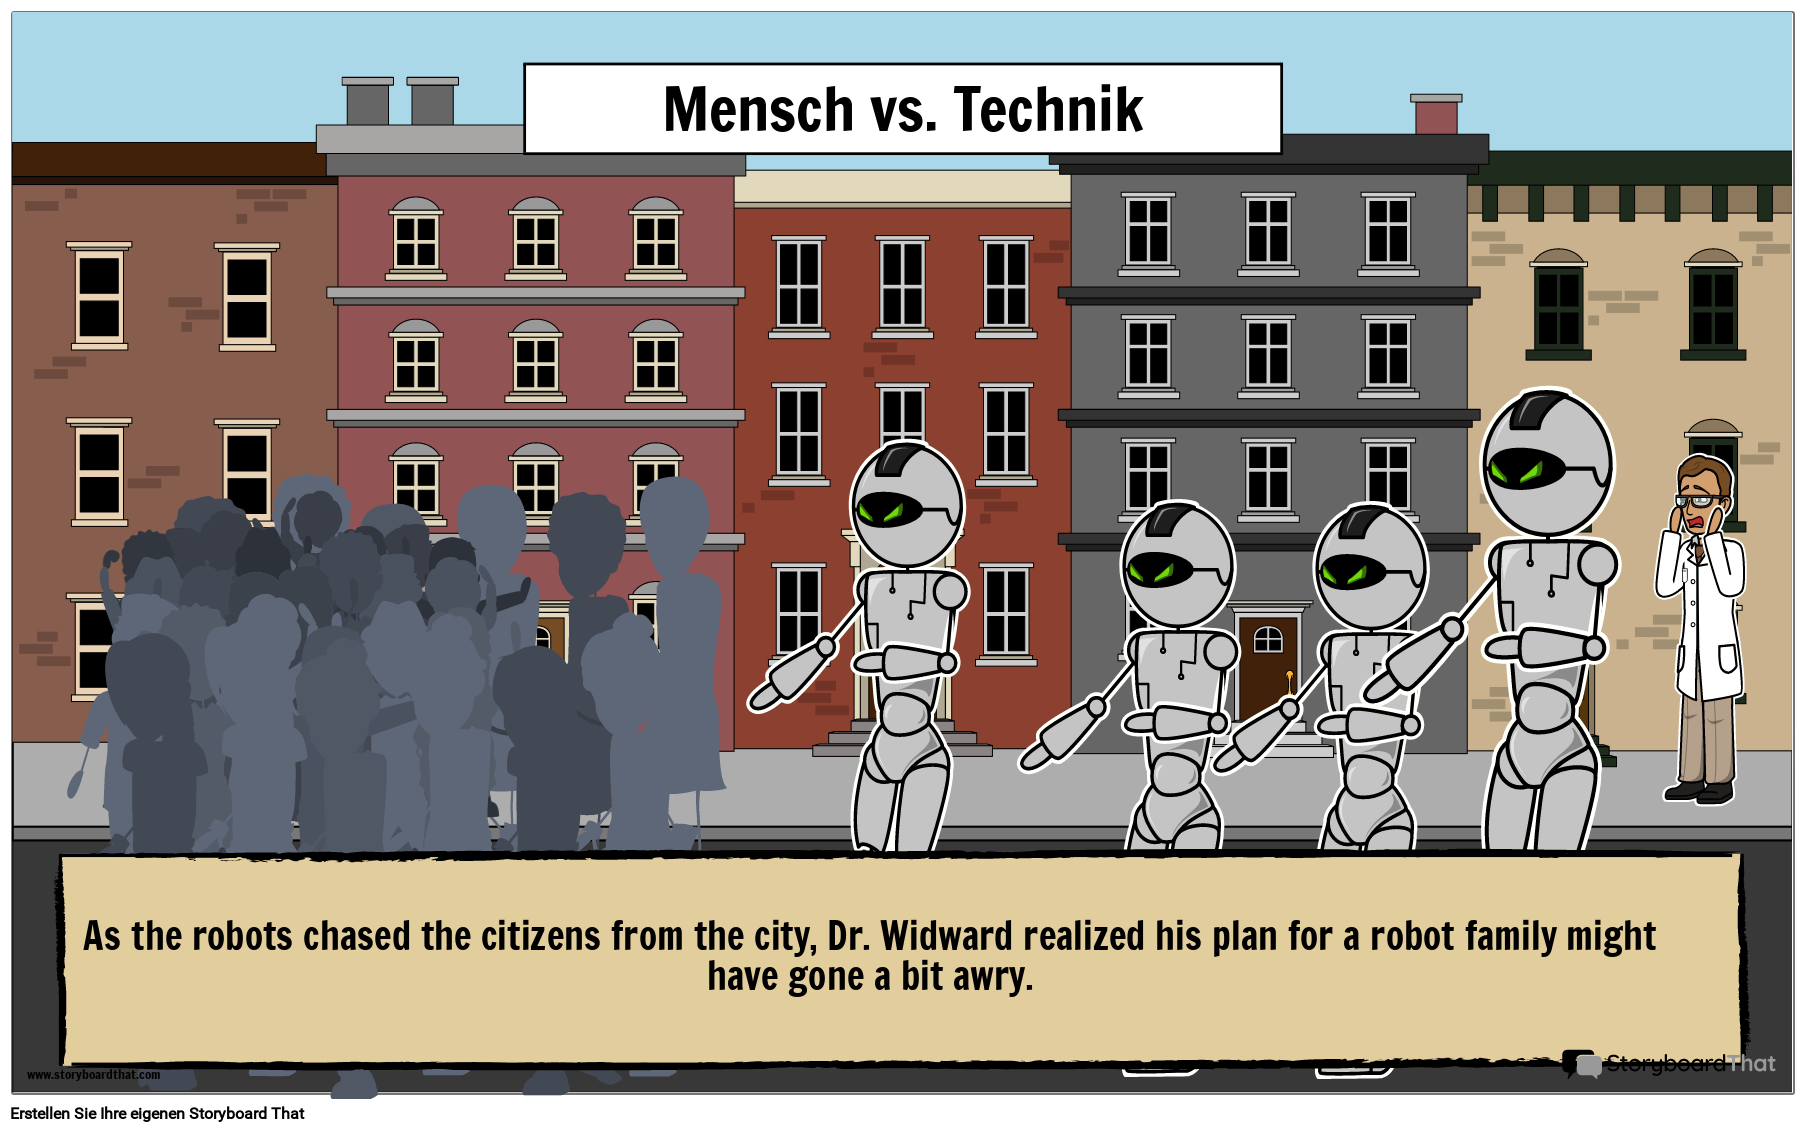 Illustrierendes Plakat zum Konflikt Zwischen Charakter und Technologie